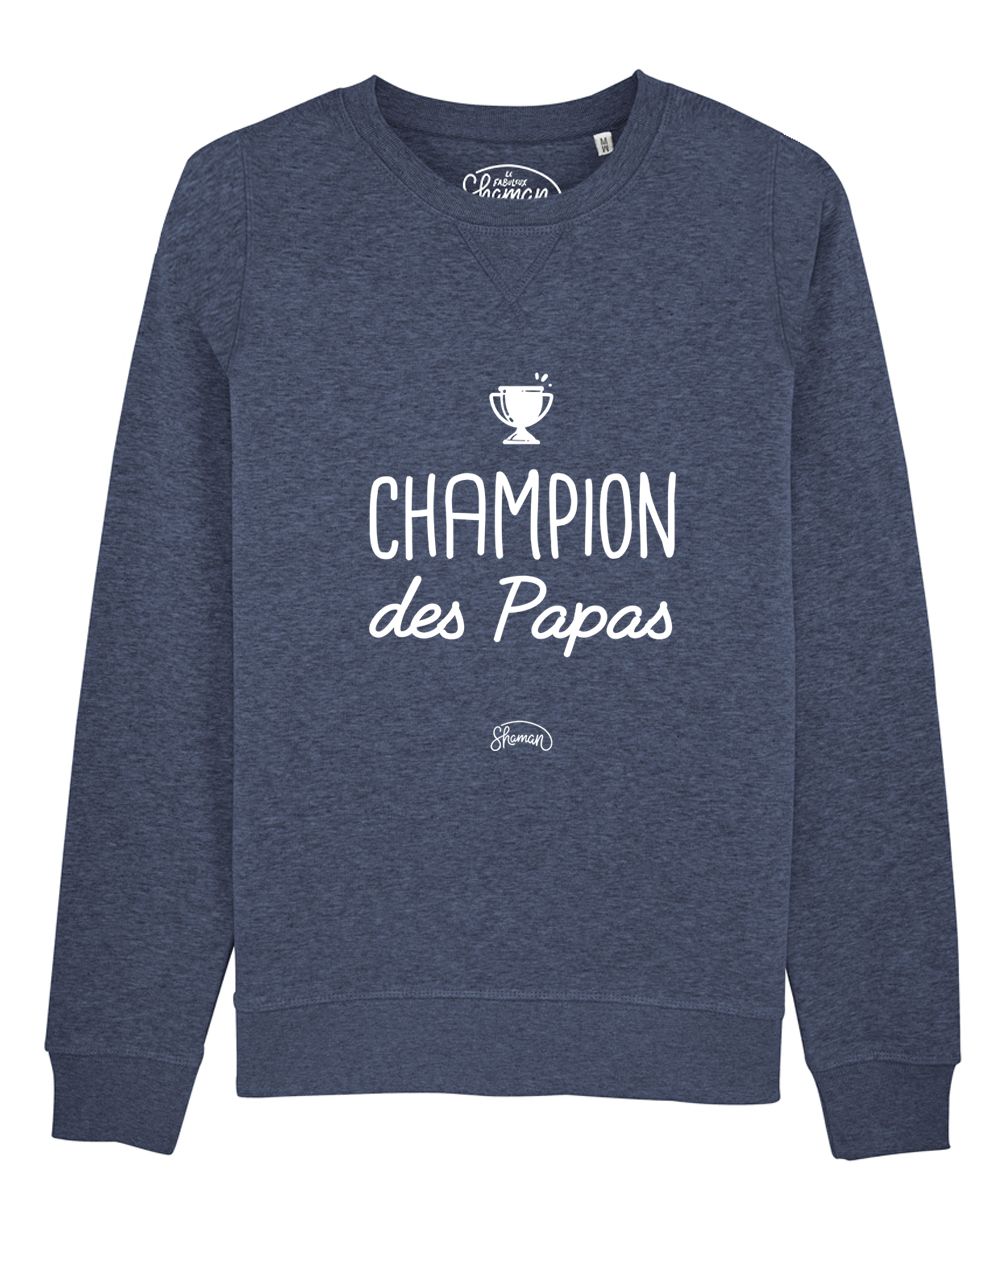 Sweat "Champion des Papas"